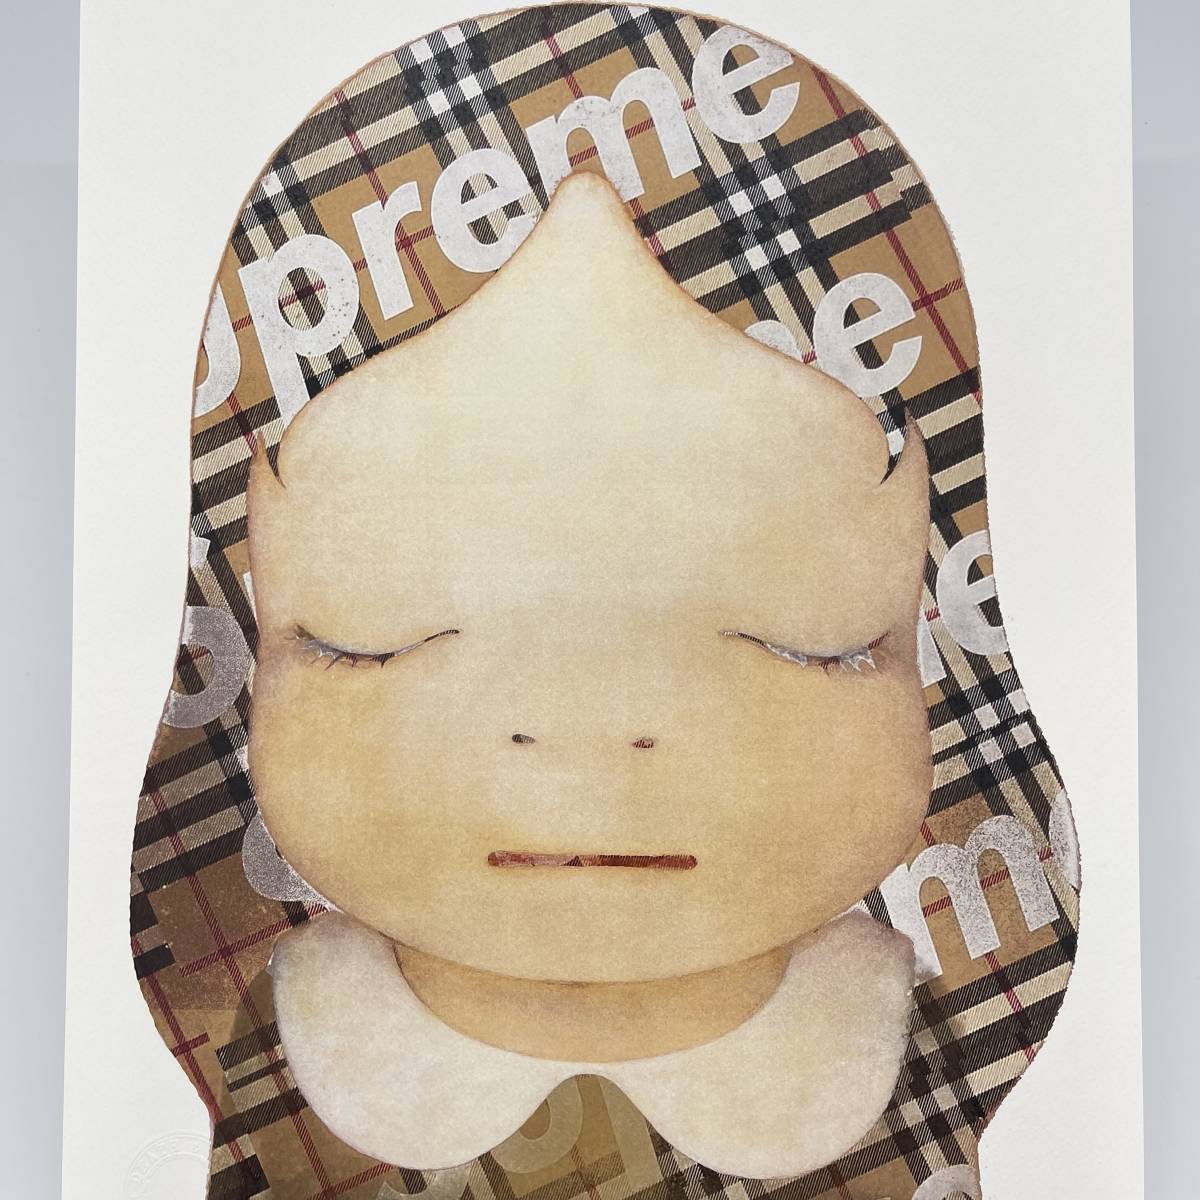 DEATH NYC 世界限定100枚 アートポスター　奈良美智❸ 印刷物 コレクション おもちゃ・ホビー・グッズ 値下げ